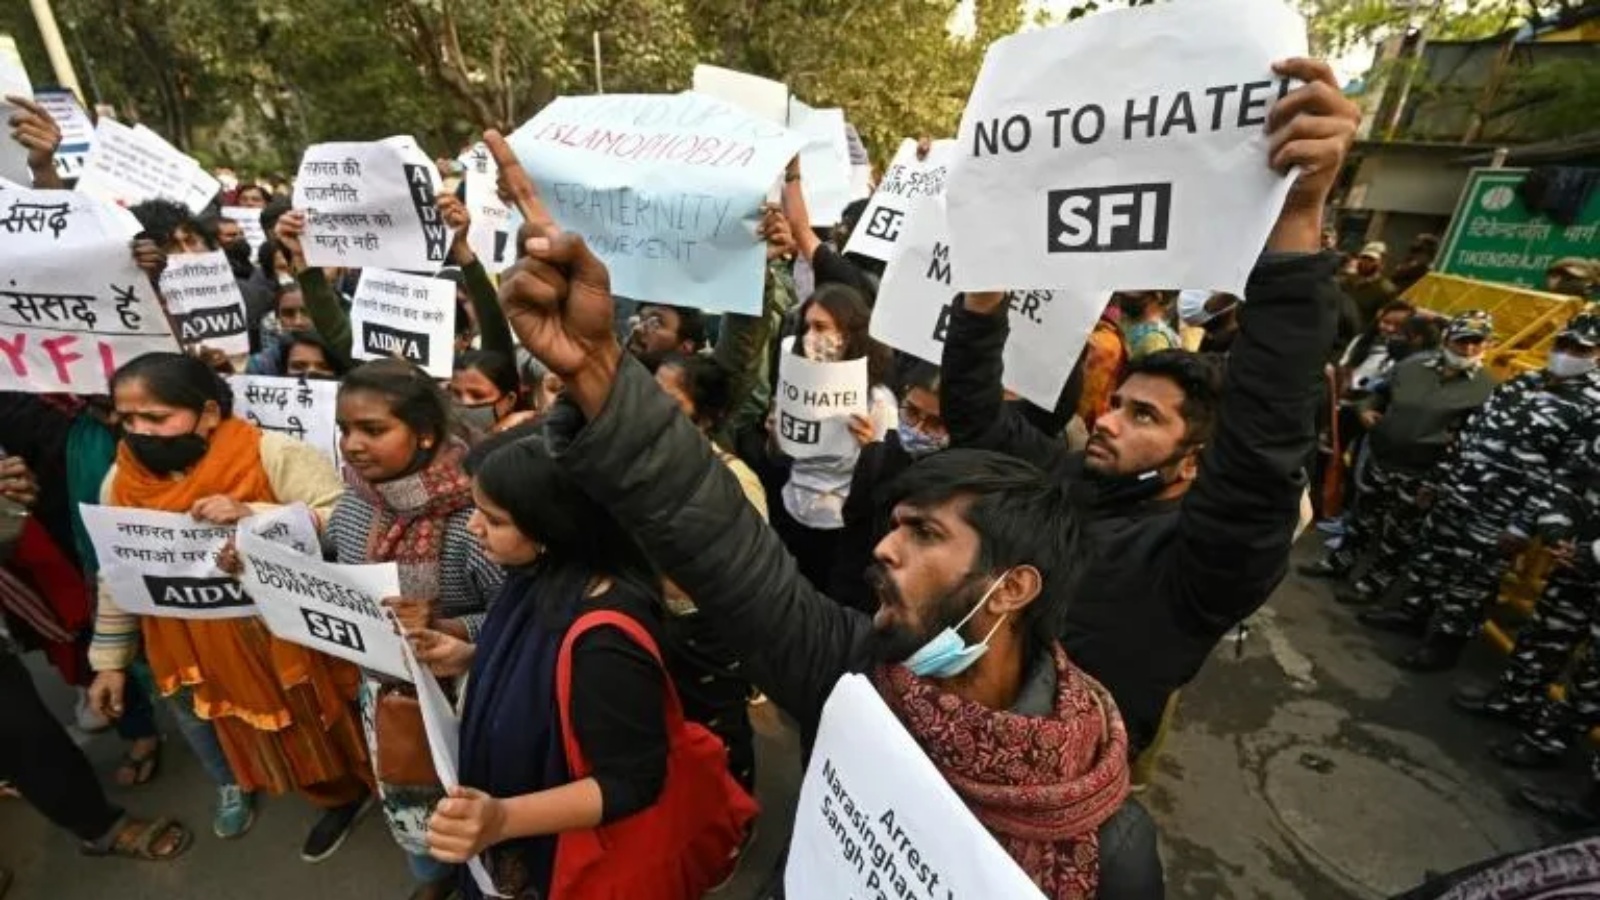 المتظاهرون يعارضون العنف الديني في تجمع حاشد في ديسمبر 2021 في نيودلهي بعد أن فتحت الشرطة الهندية تحقيقاً في حدث دعا فيه متشددون هندوس إلى قتل جماعي للأقلية المسلمة